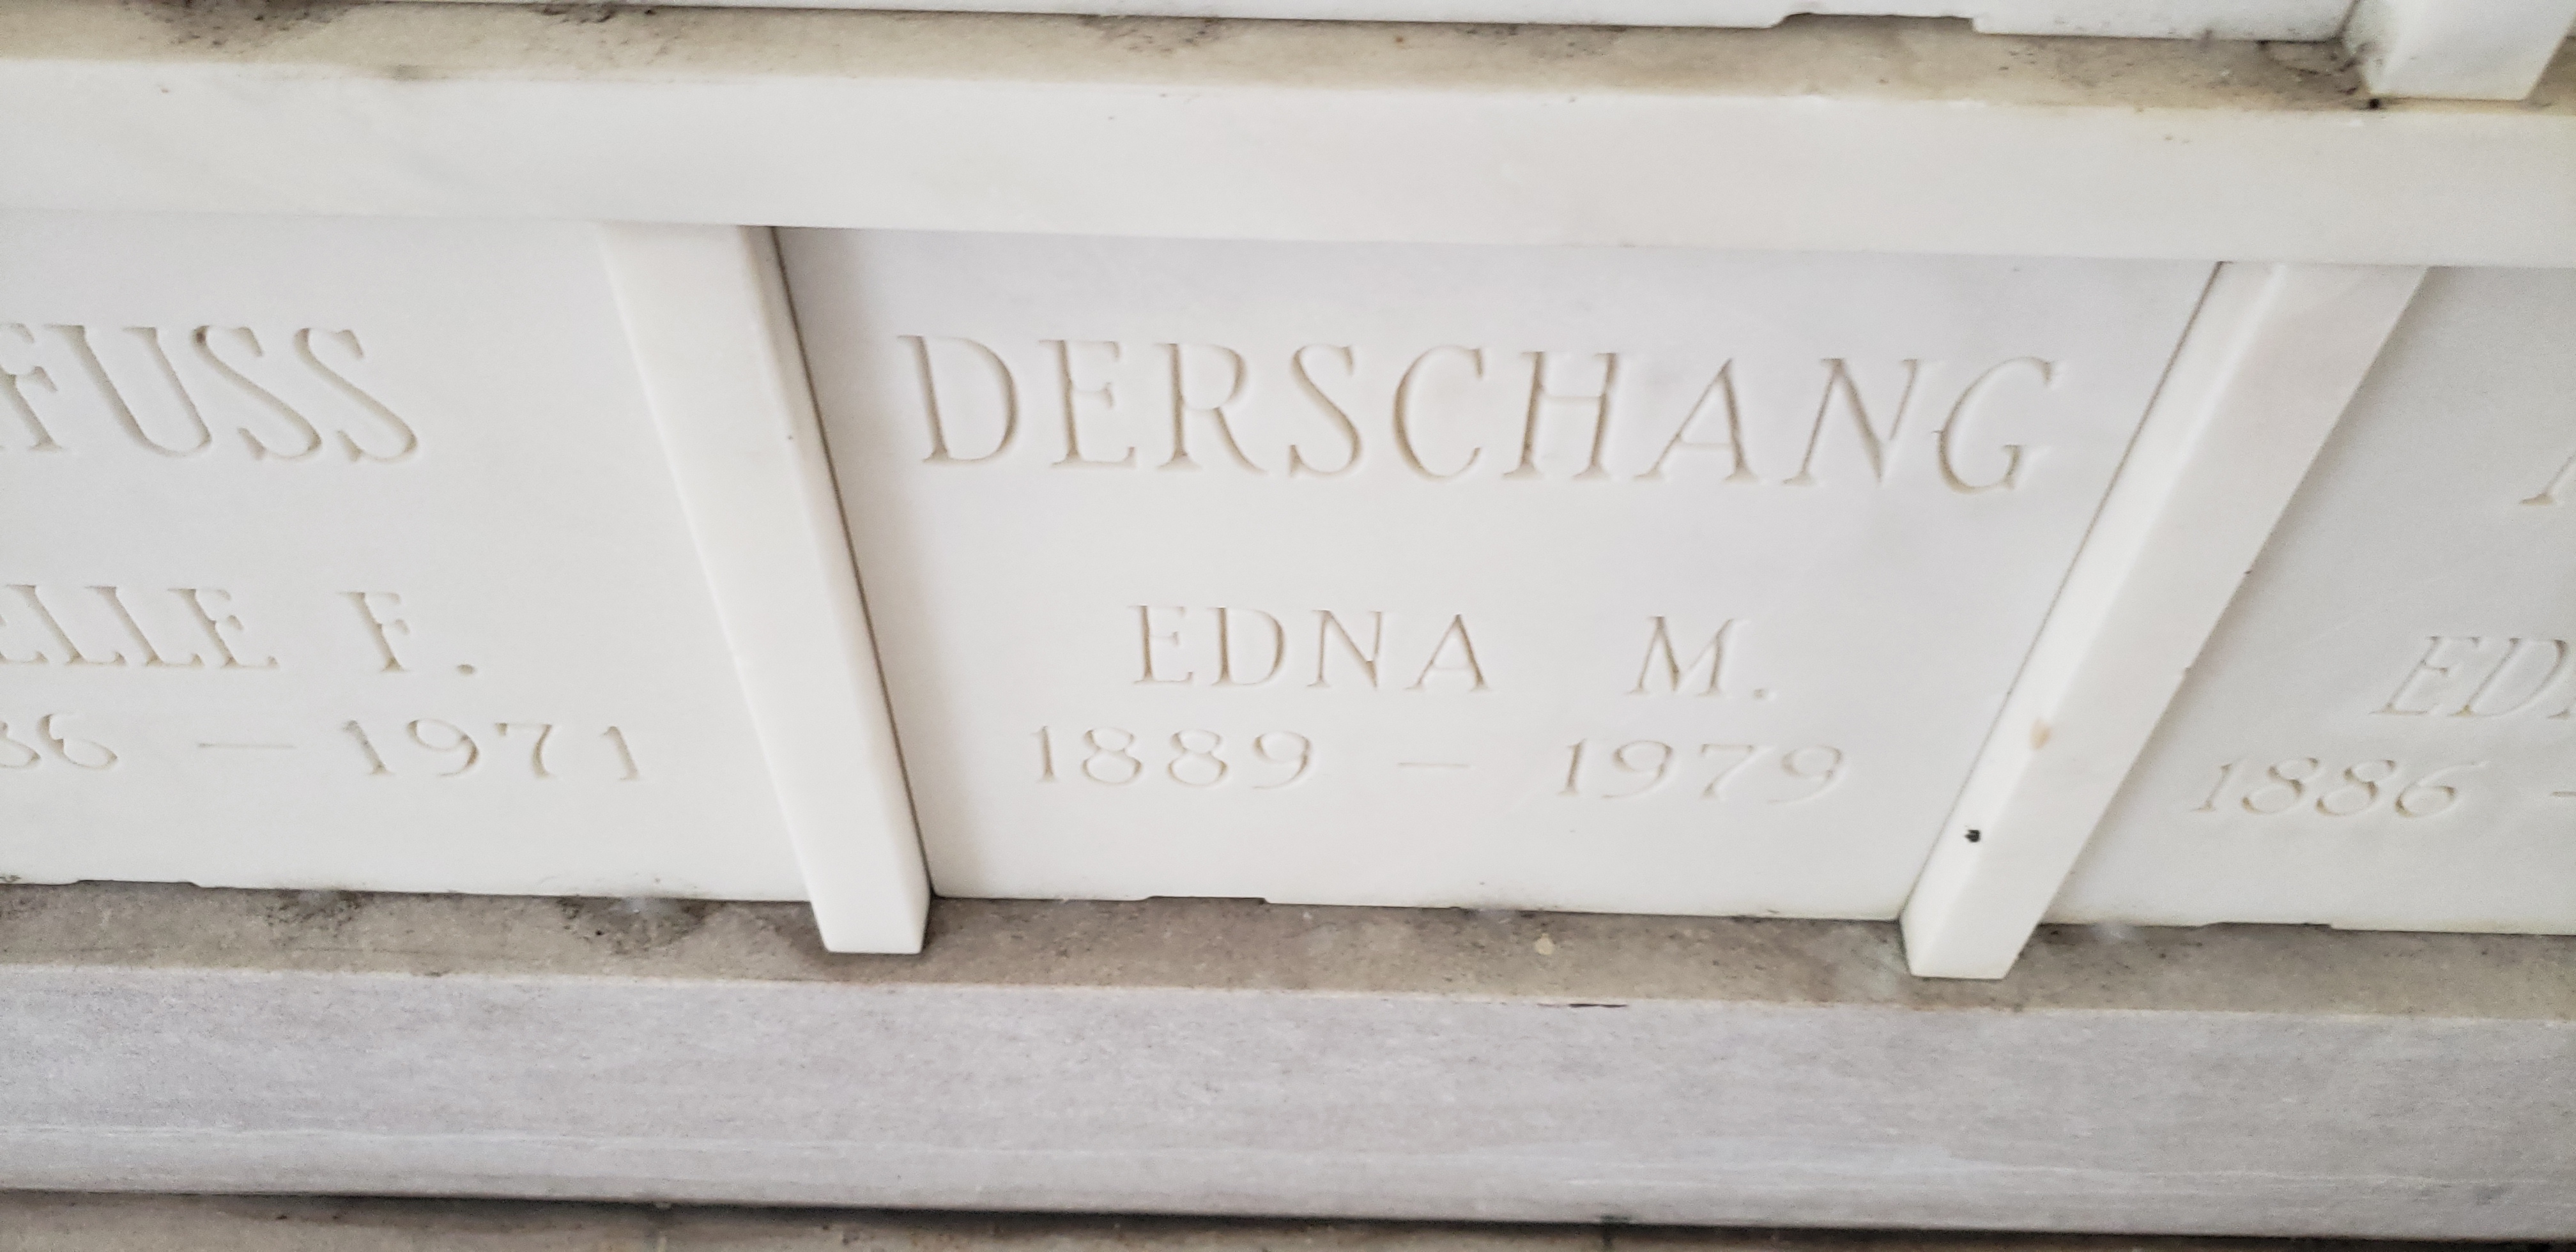 Edna M Derschang